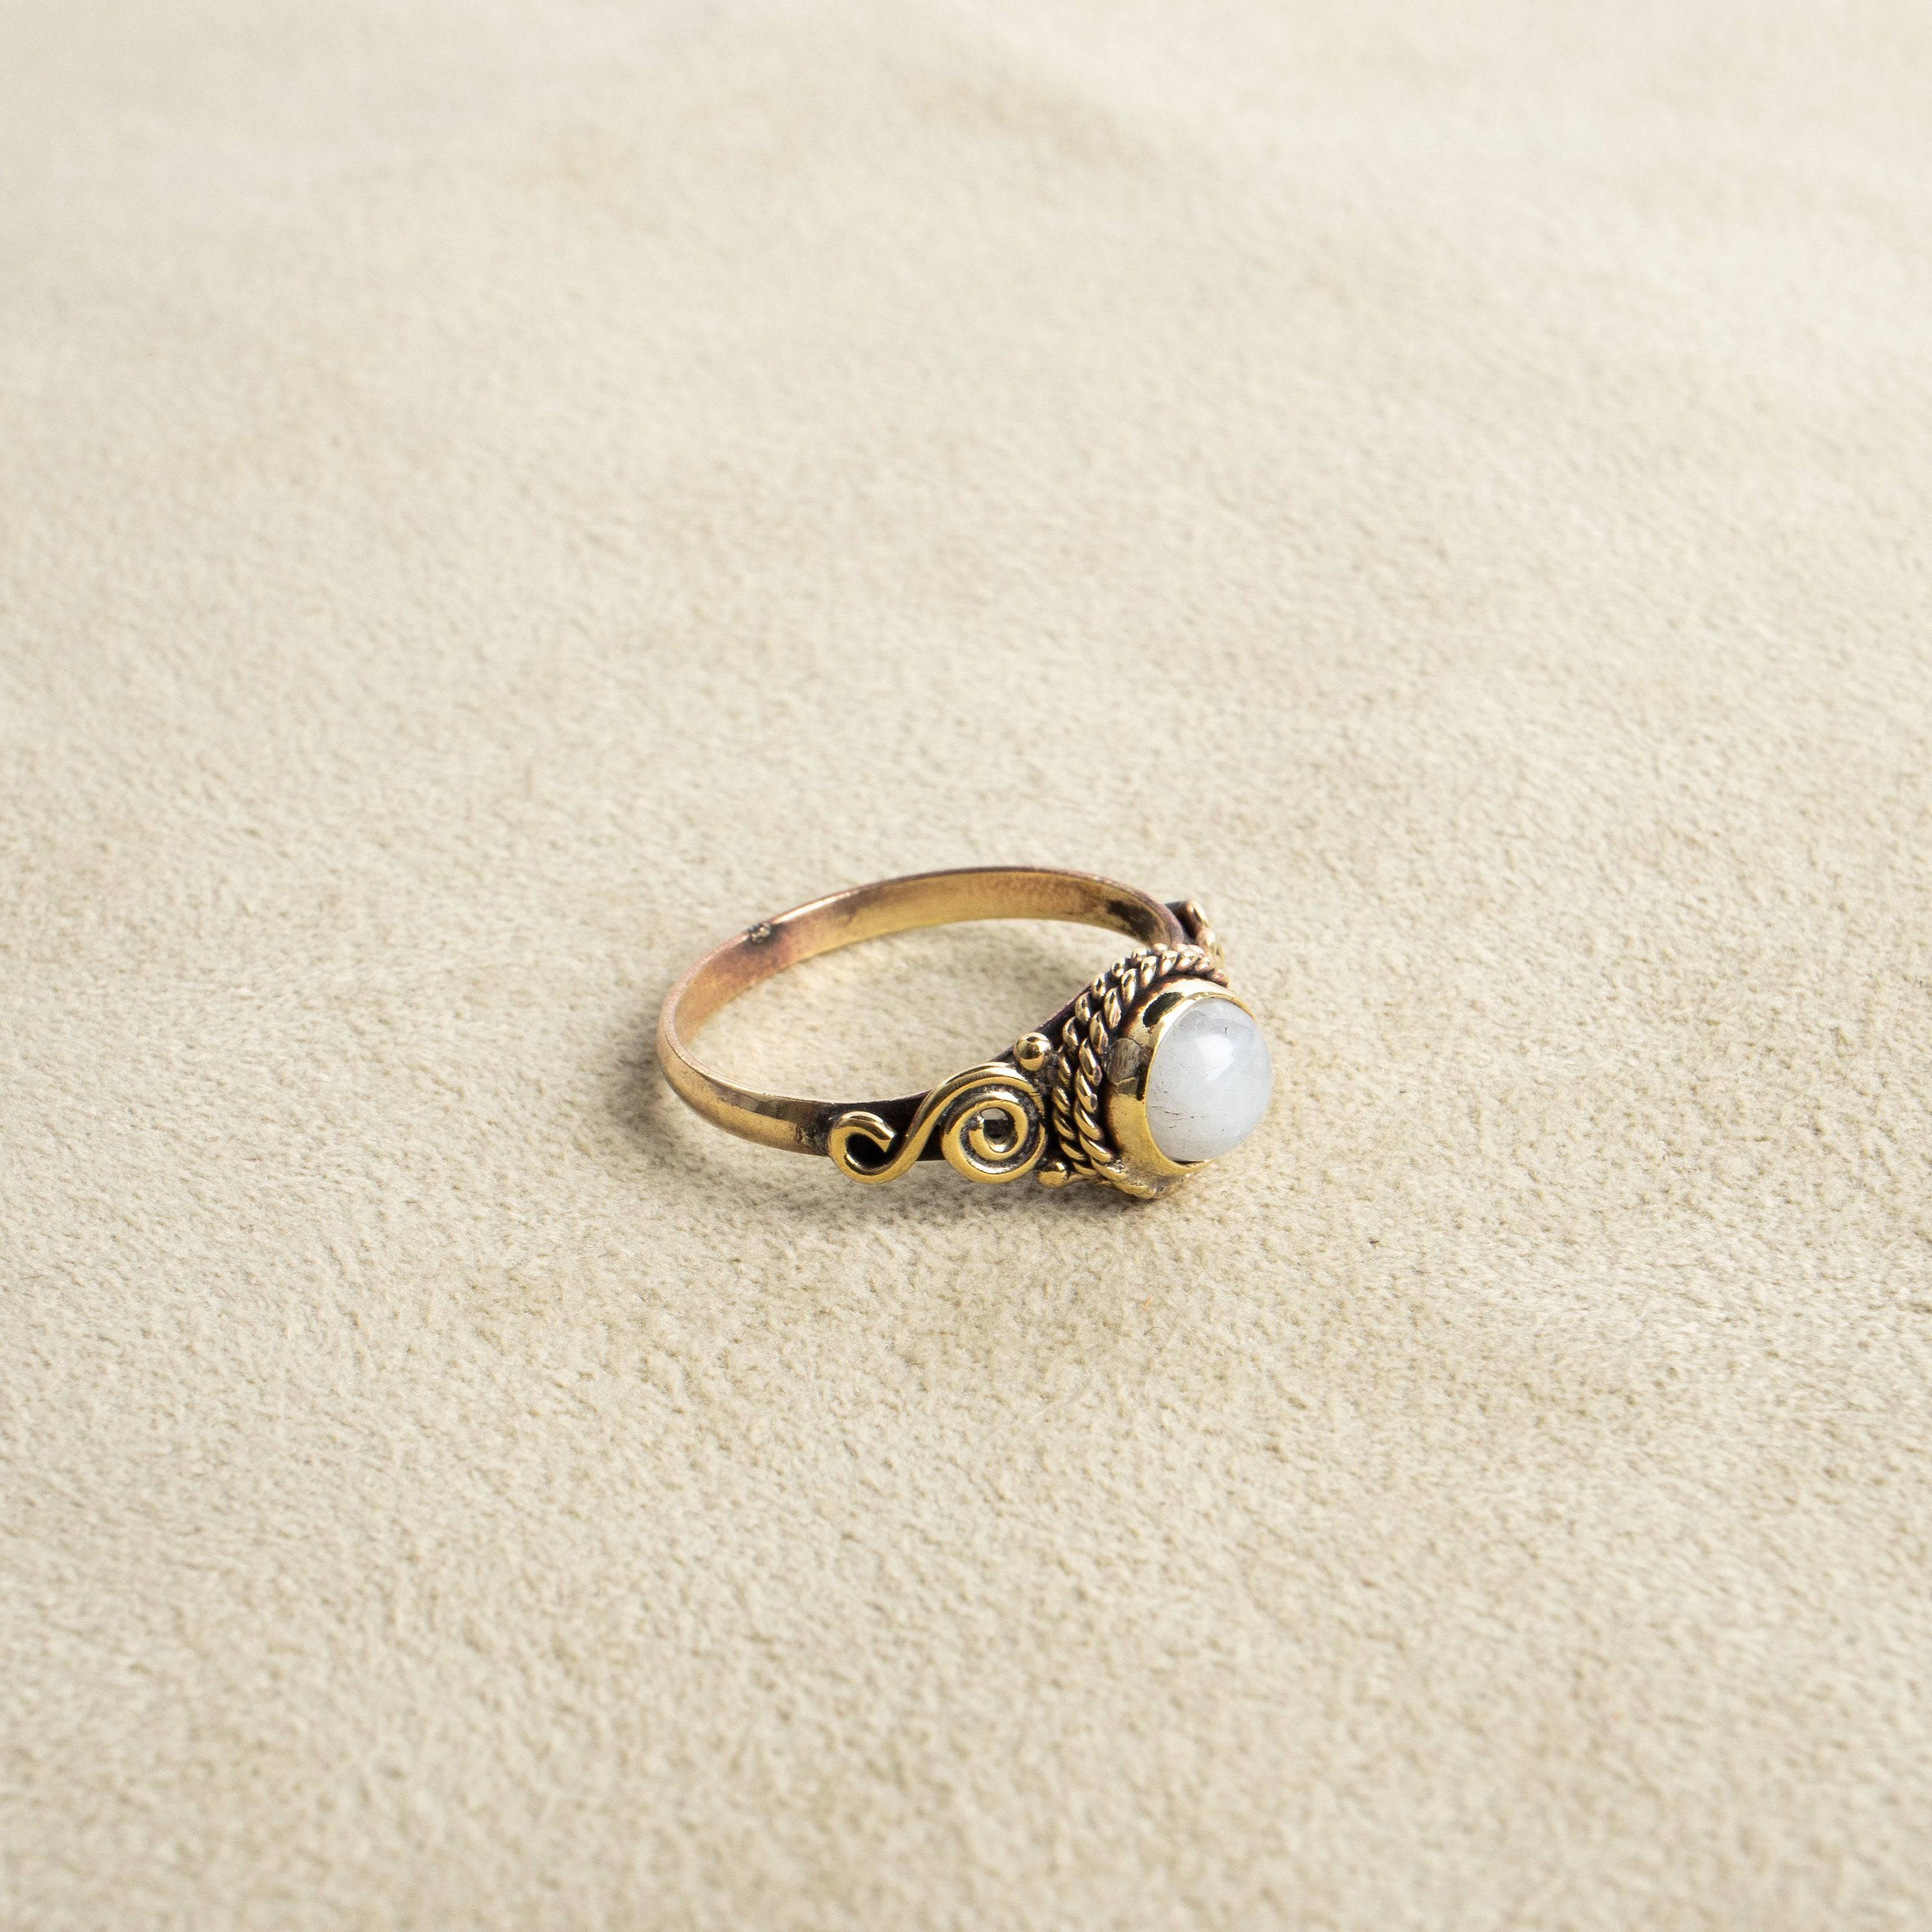 Mondstein Ring mit rundem Stein verspielt handgemacht - NooeBerlin